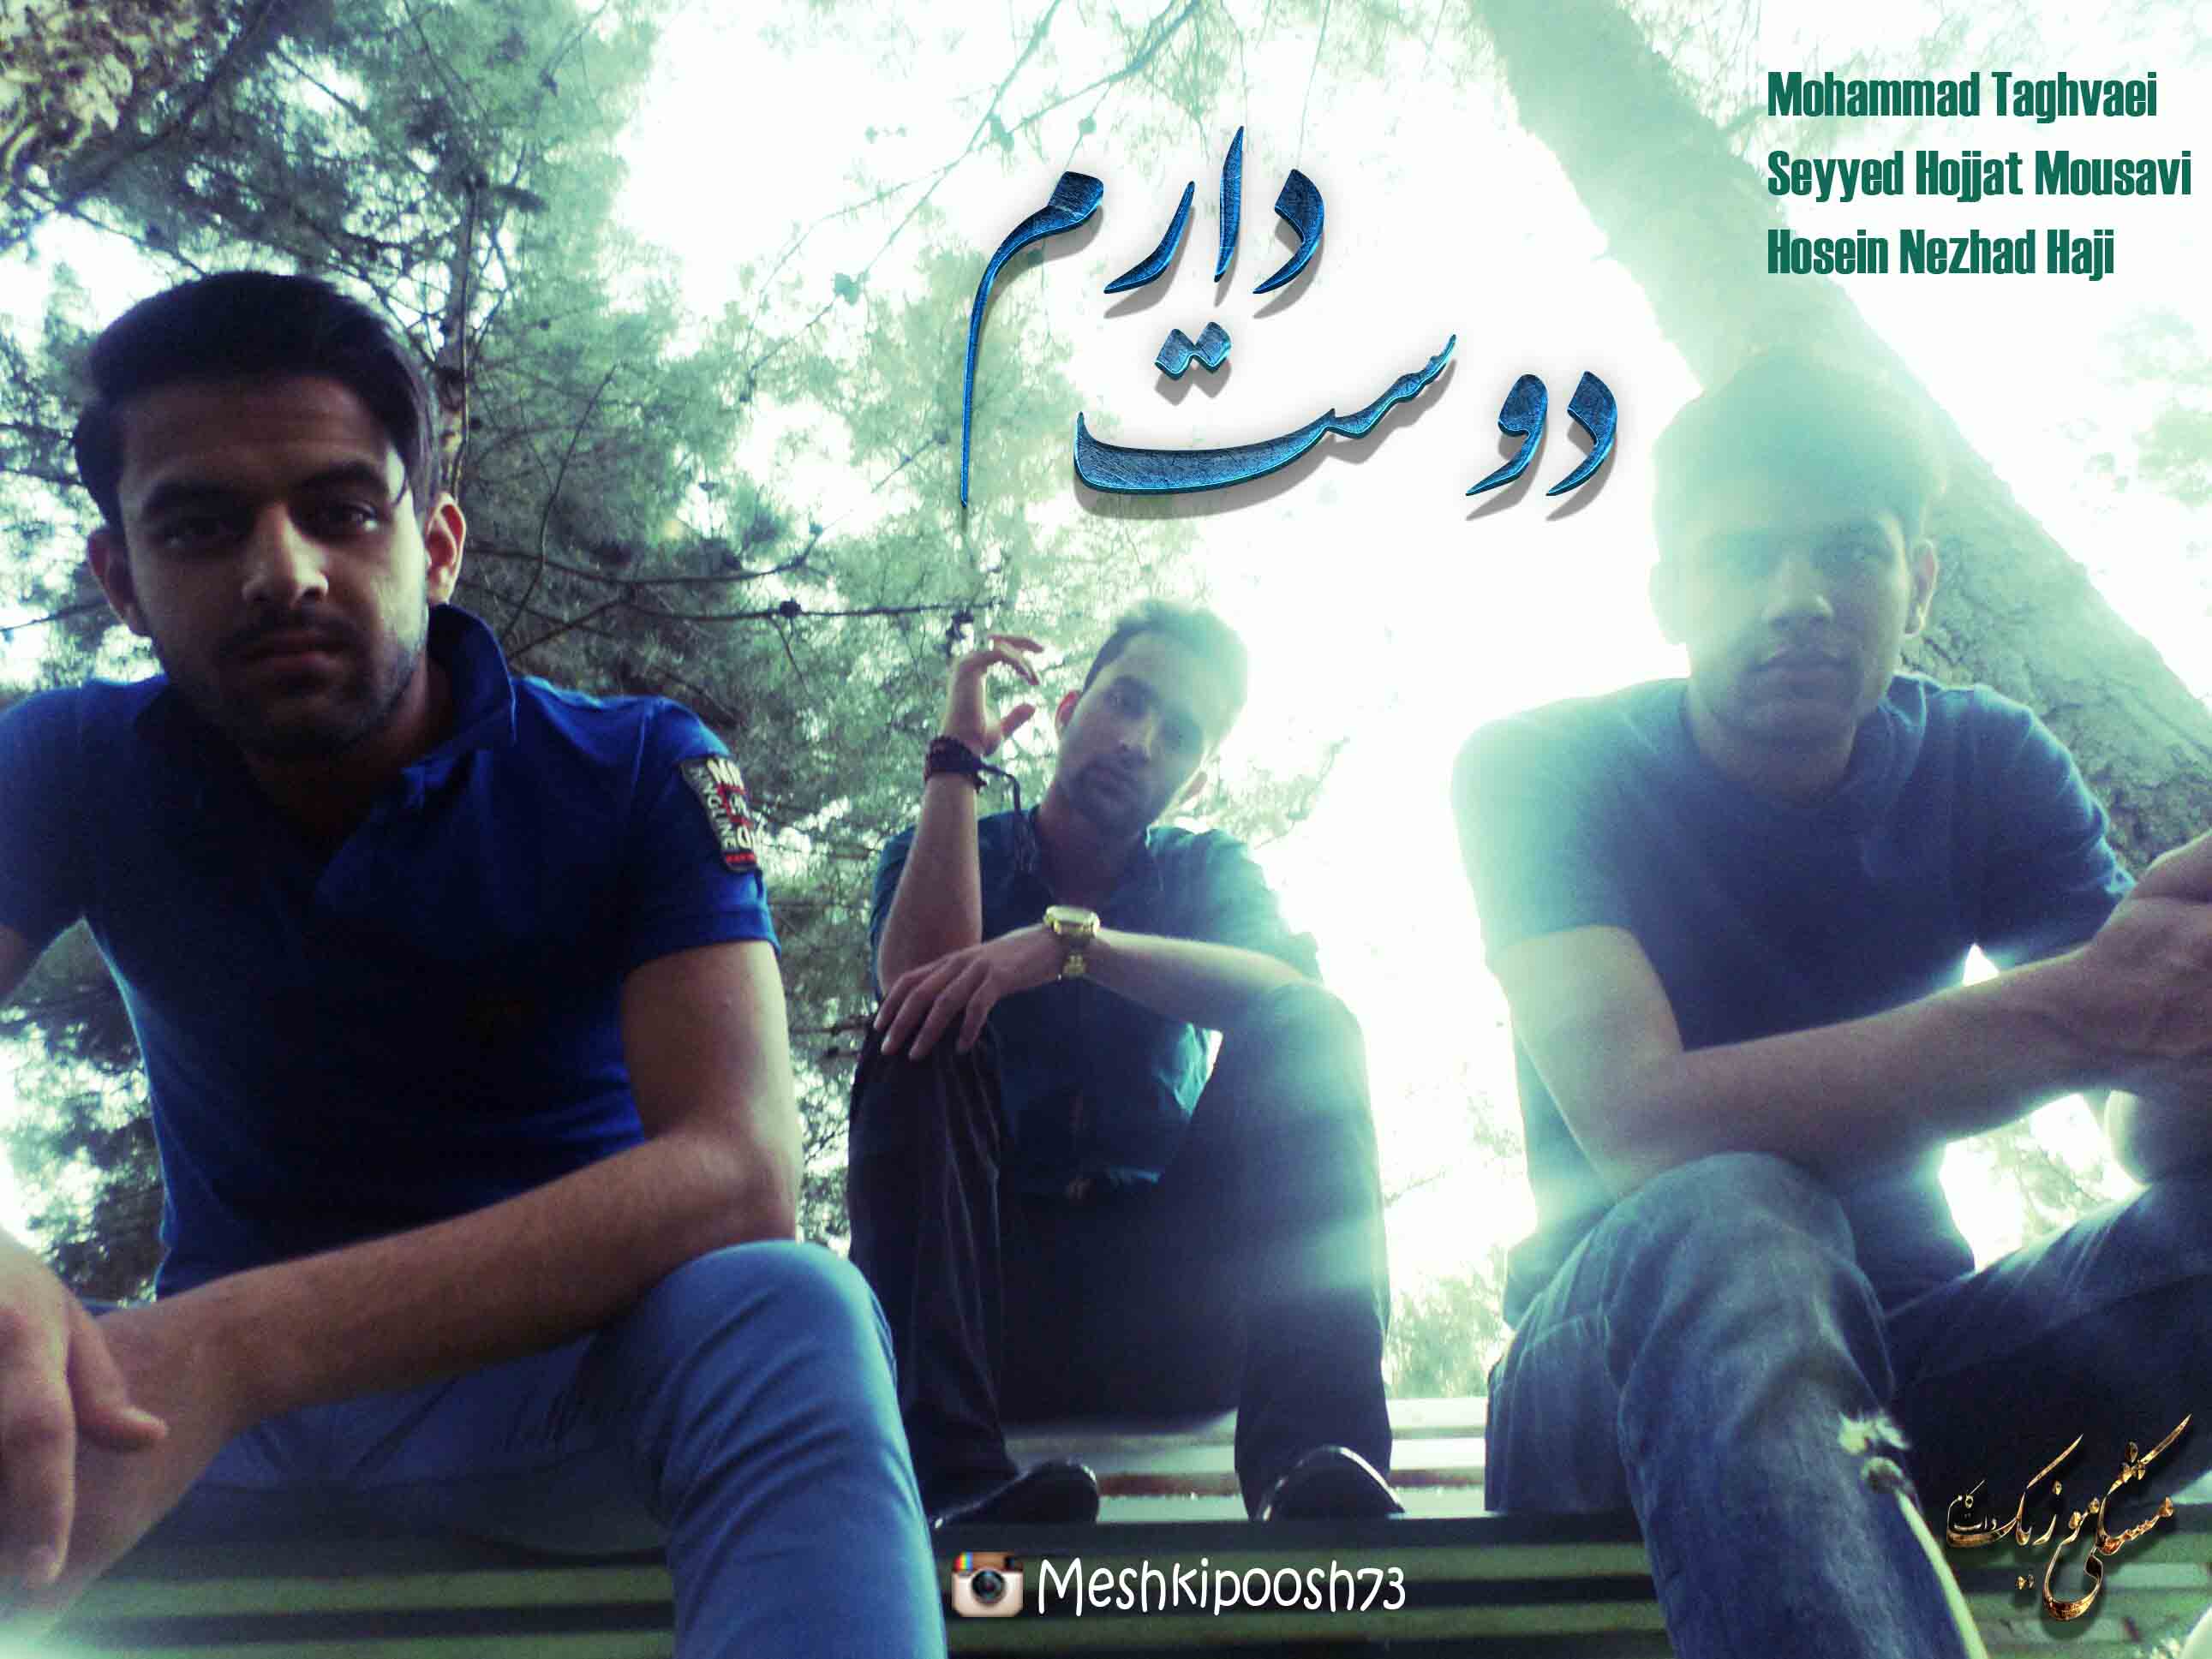 دانلود آهنگ جدید محمد تقوایی و سید حجت موسوی زاده و حسین نژاد حاجی به نام دوست دارم